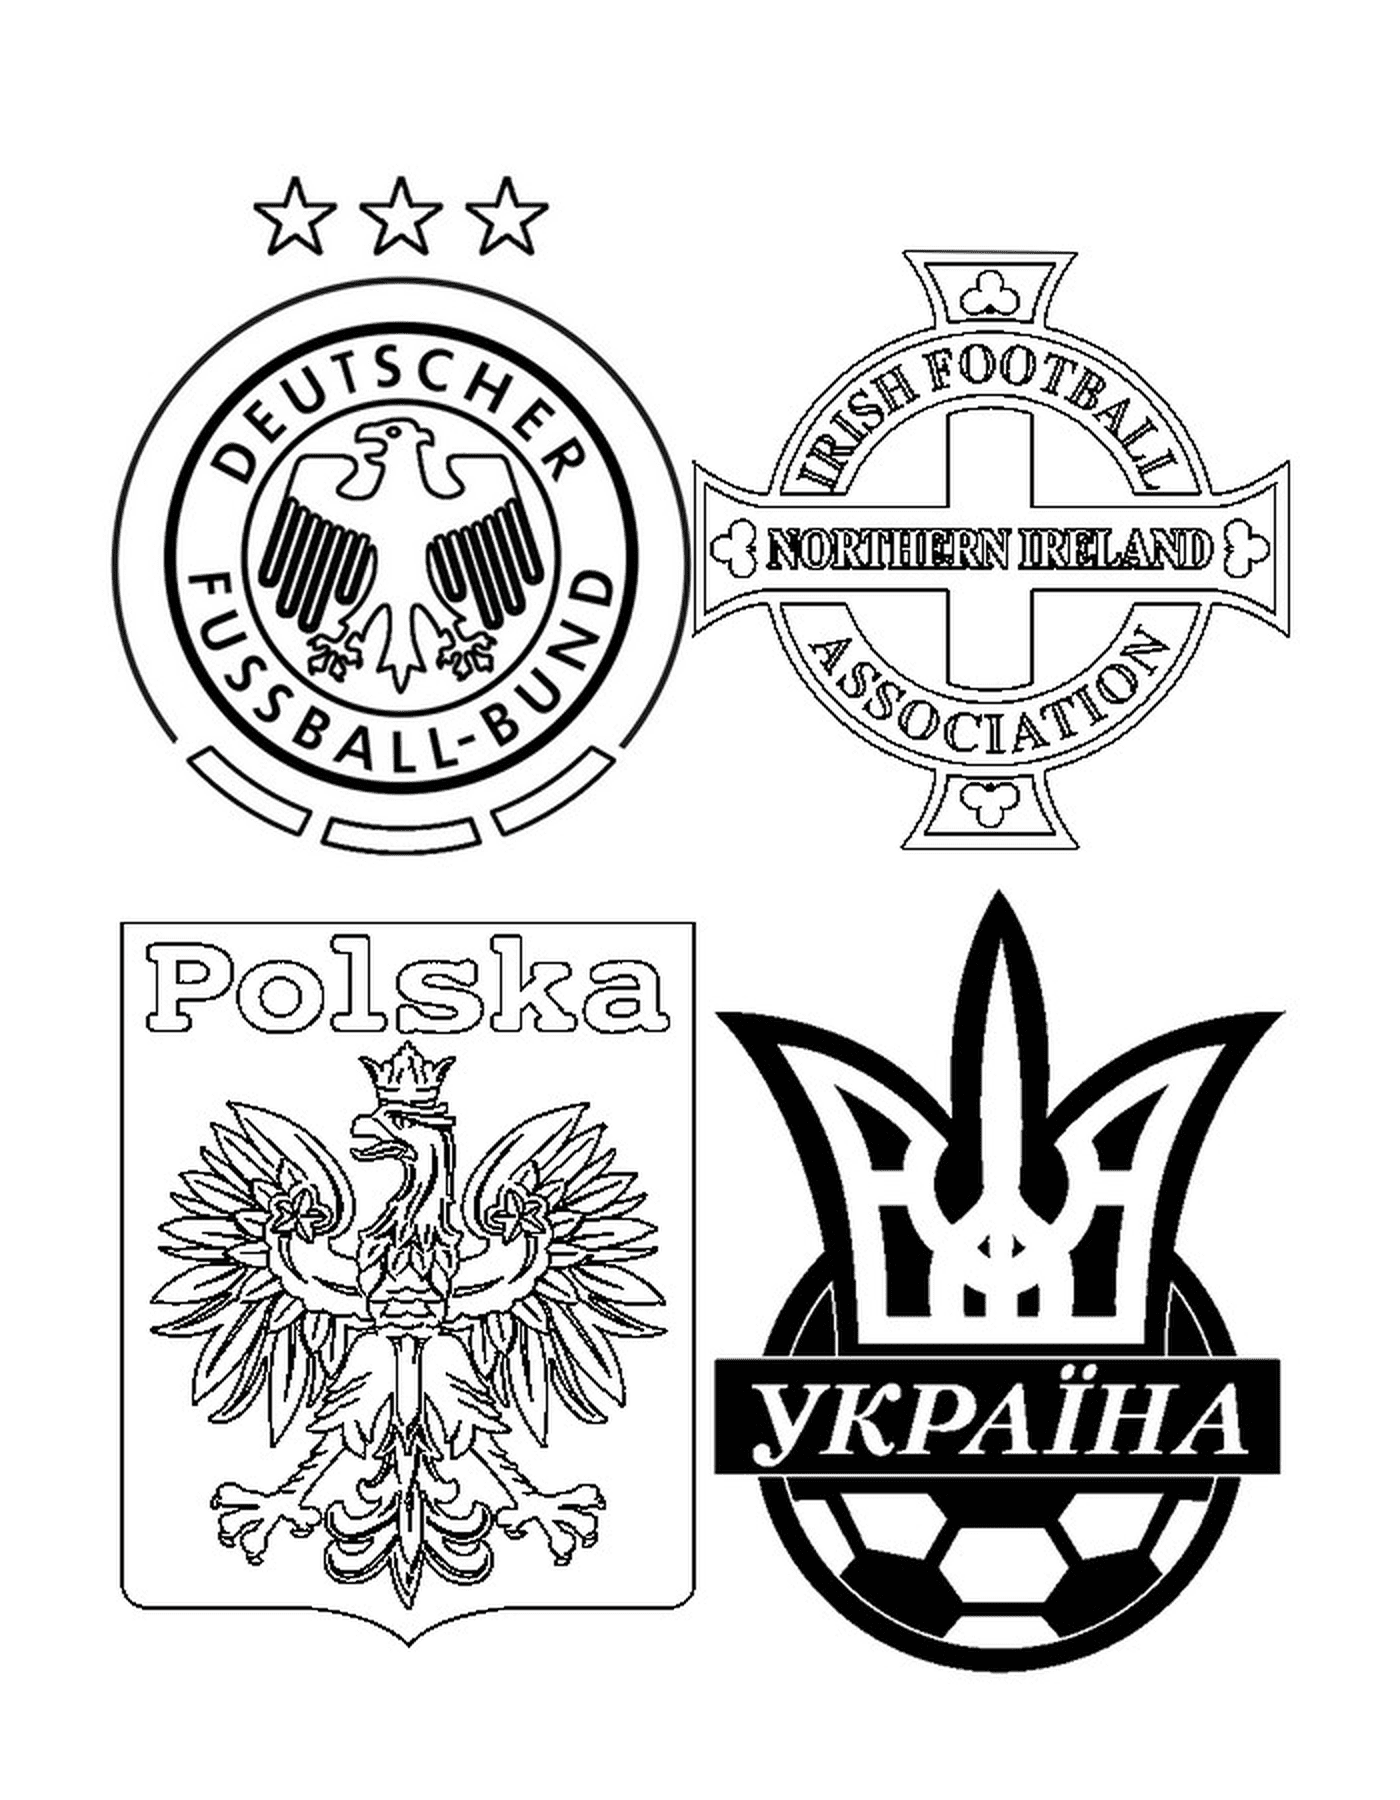  Четыре логотипа футбольных команд, один из них имеет крест 